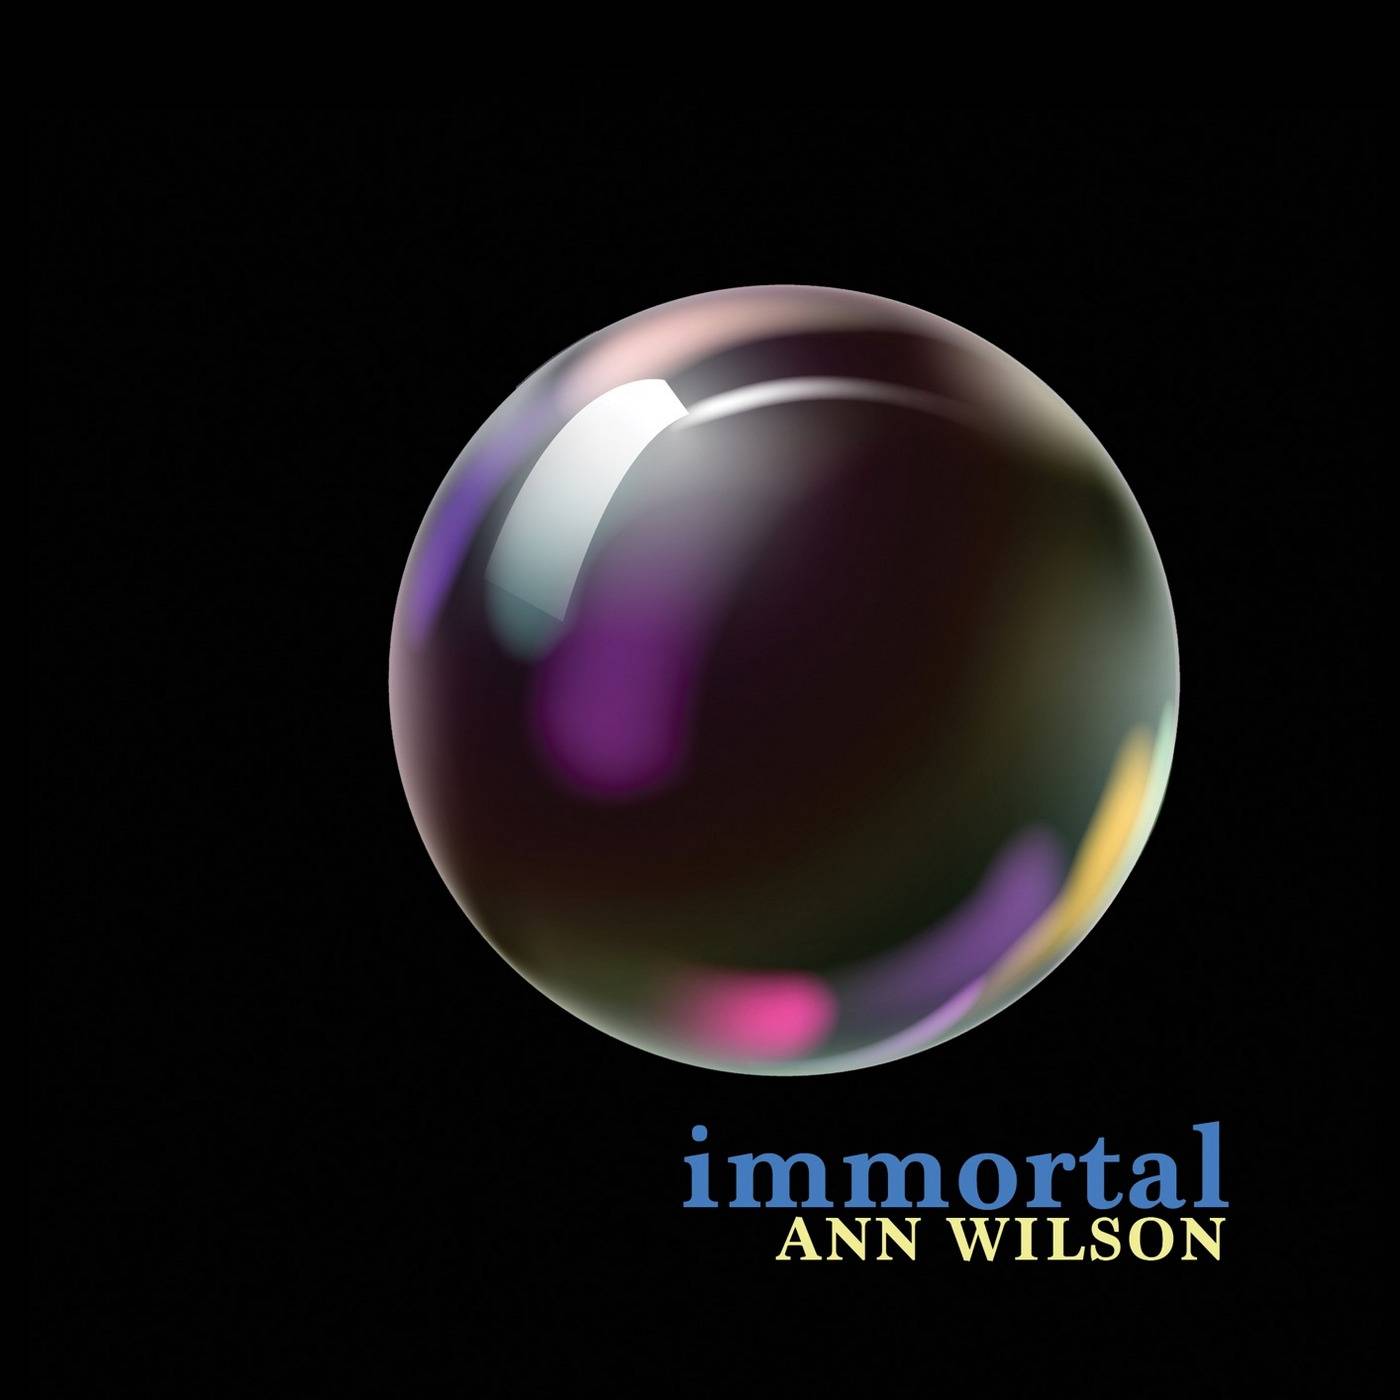 Ann Wilson - Immortal (2018) [FLAC 24bit/96kHz]